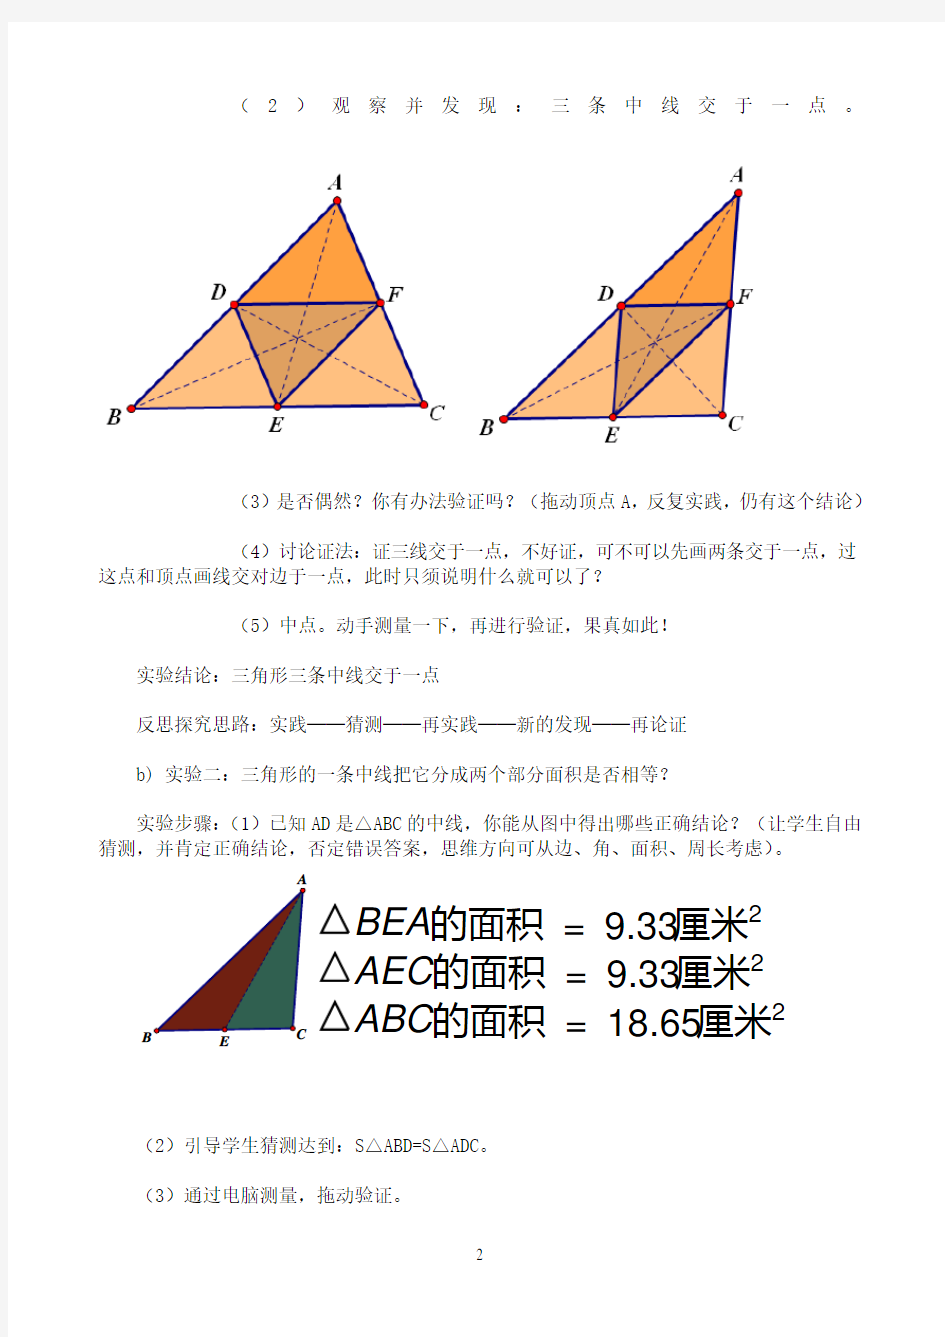 数学课题《几何画板在初中数学中的应用研究》案例